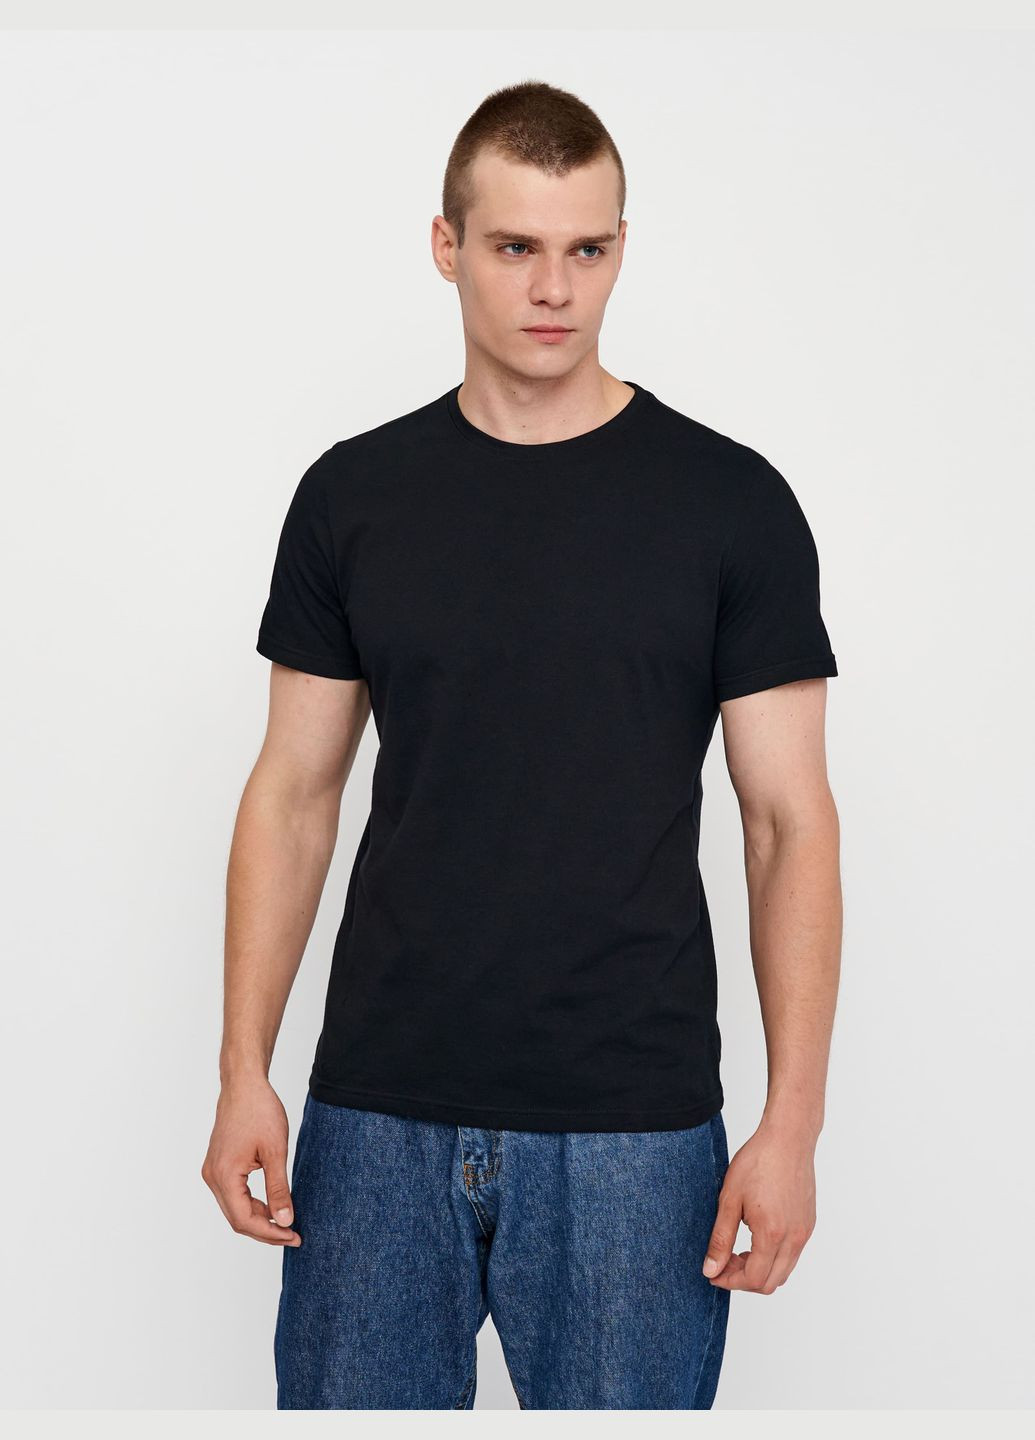 Чорна футболка для чоловіків базова з коротким рукавом Роза